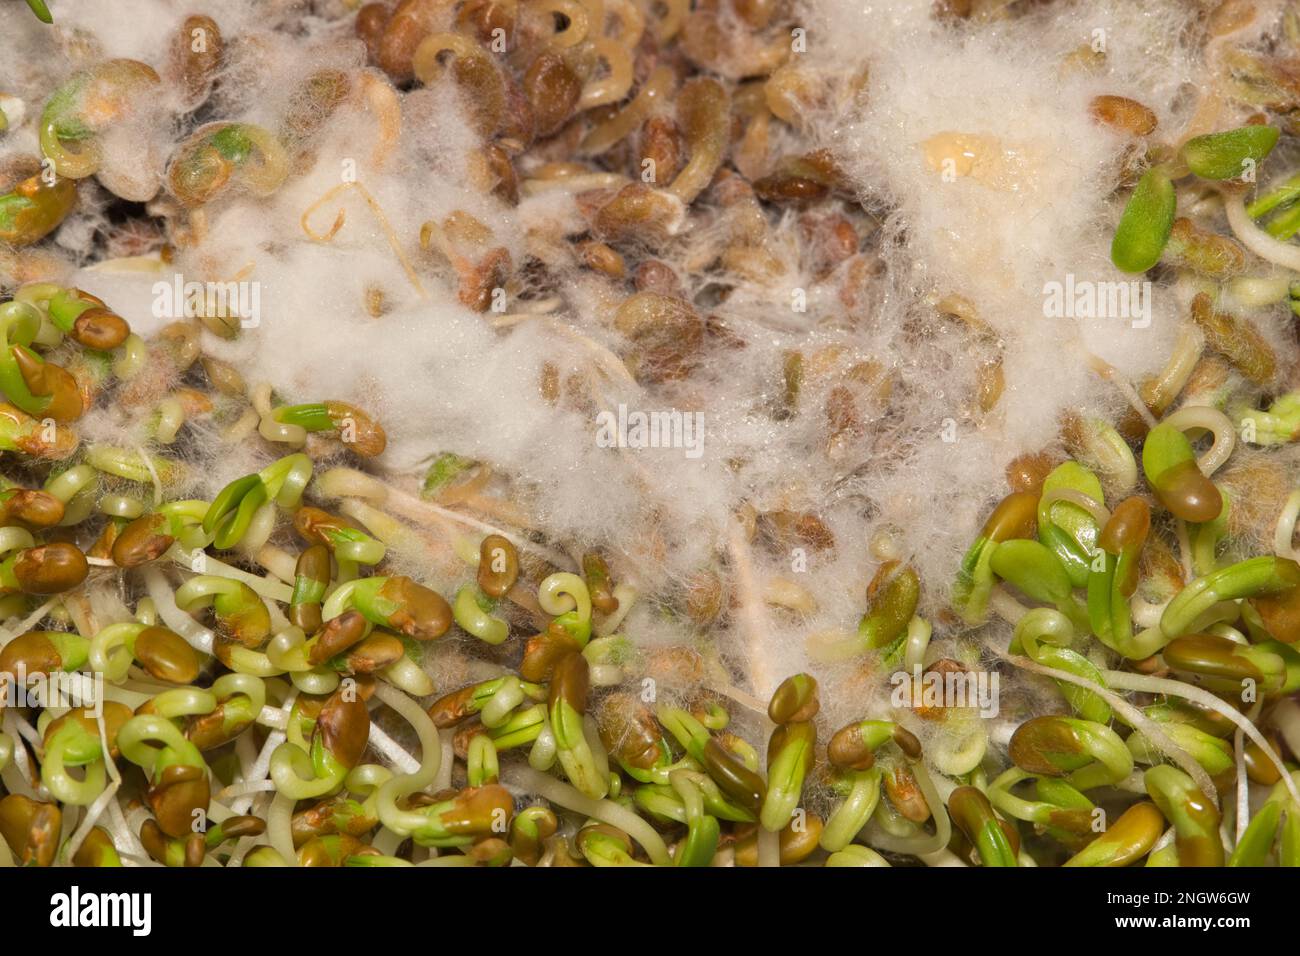 Germogli di erba medica marcio con muffa bianca che cresce su di esso, direttamente sopra macro immagine. Concetto di salute alimentare scaduto. Foto Stock